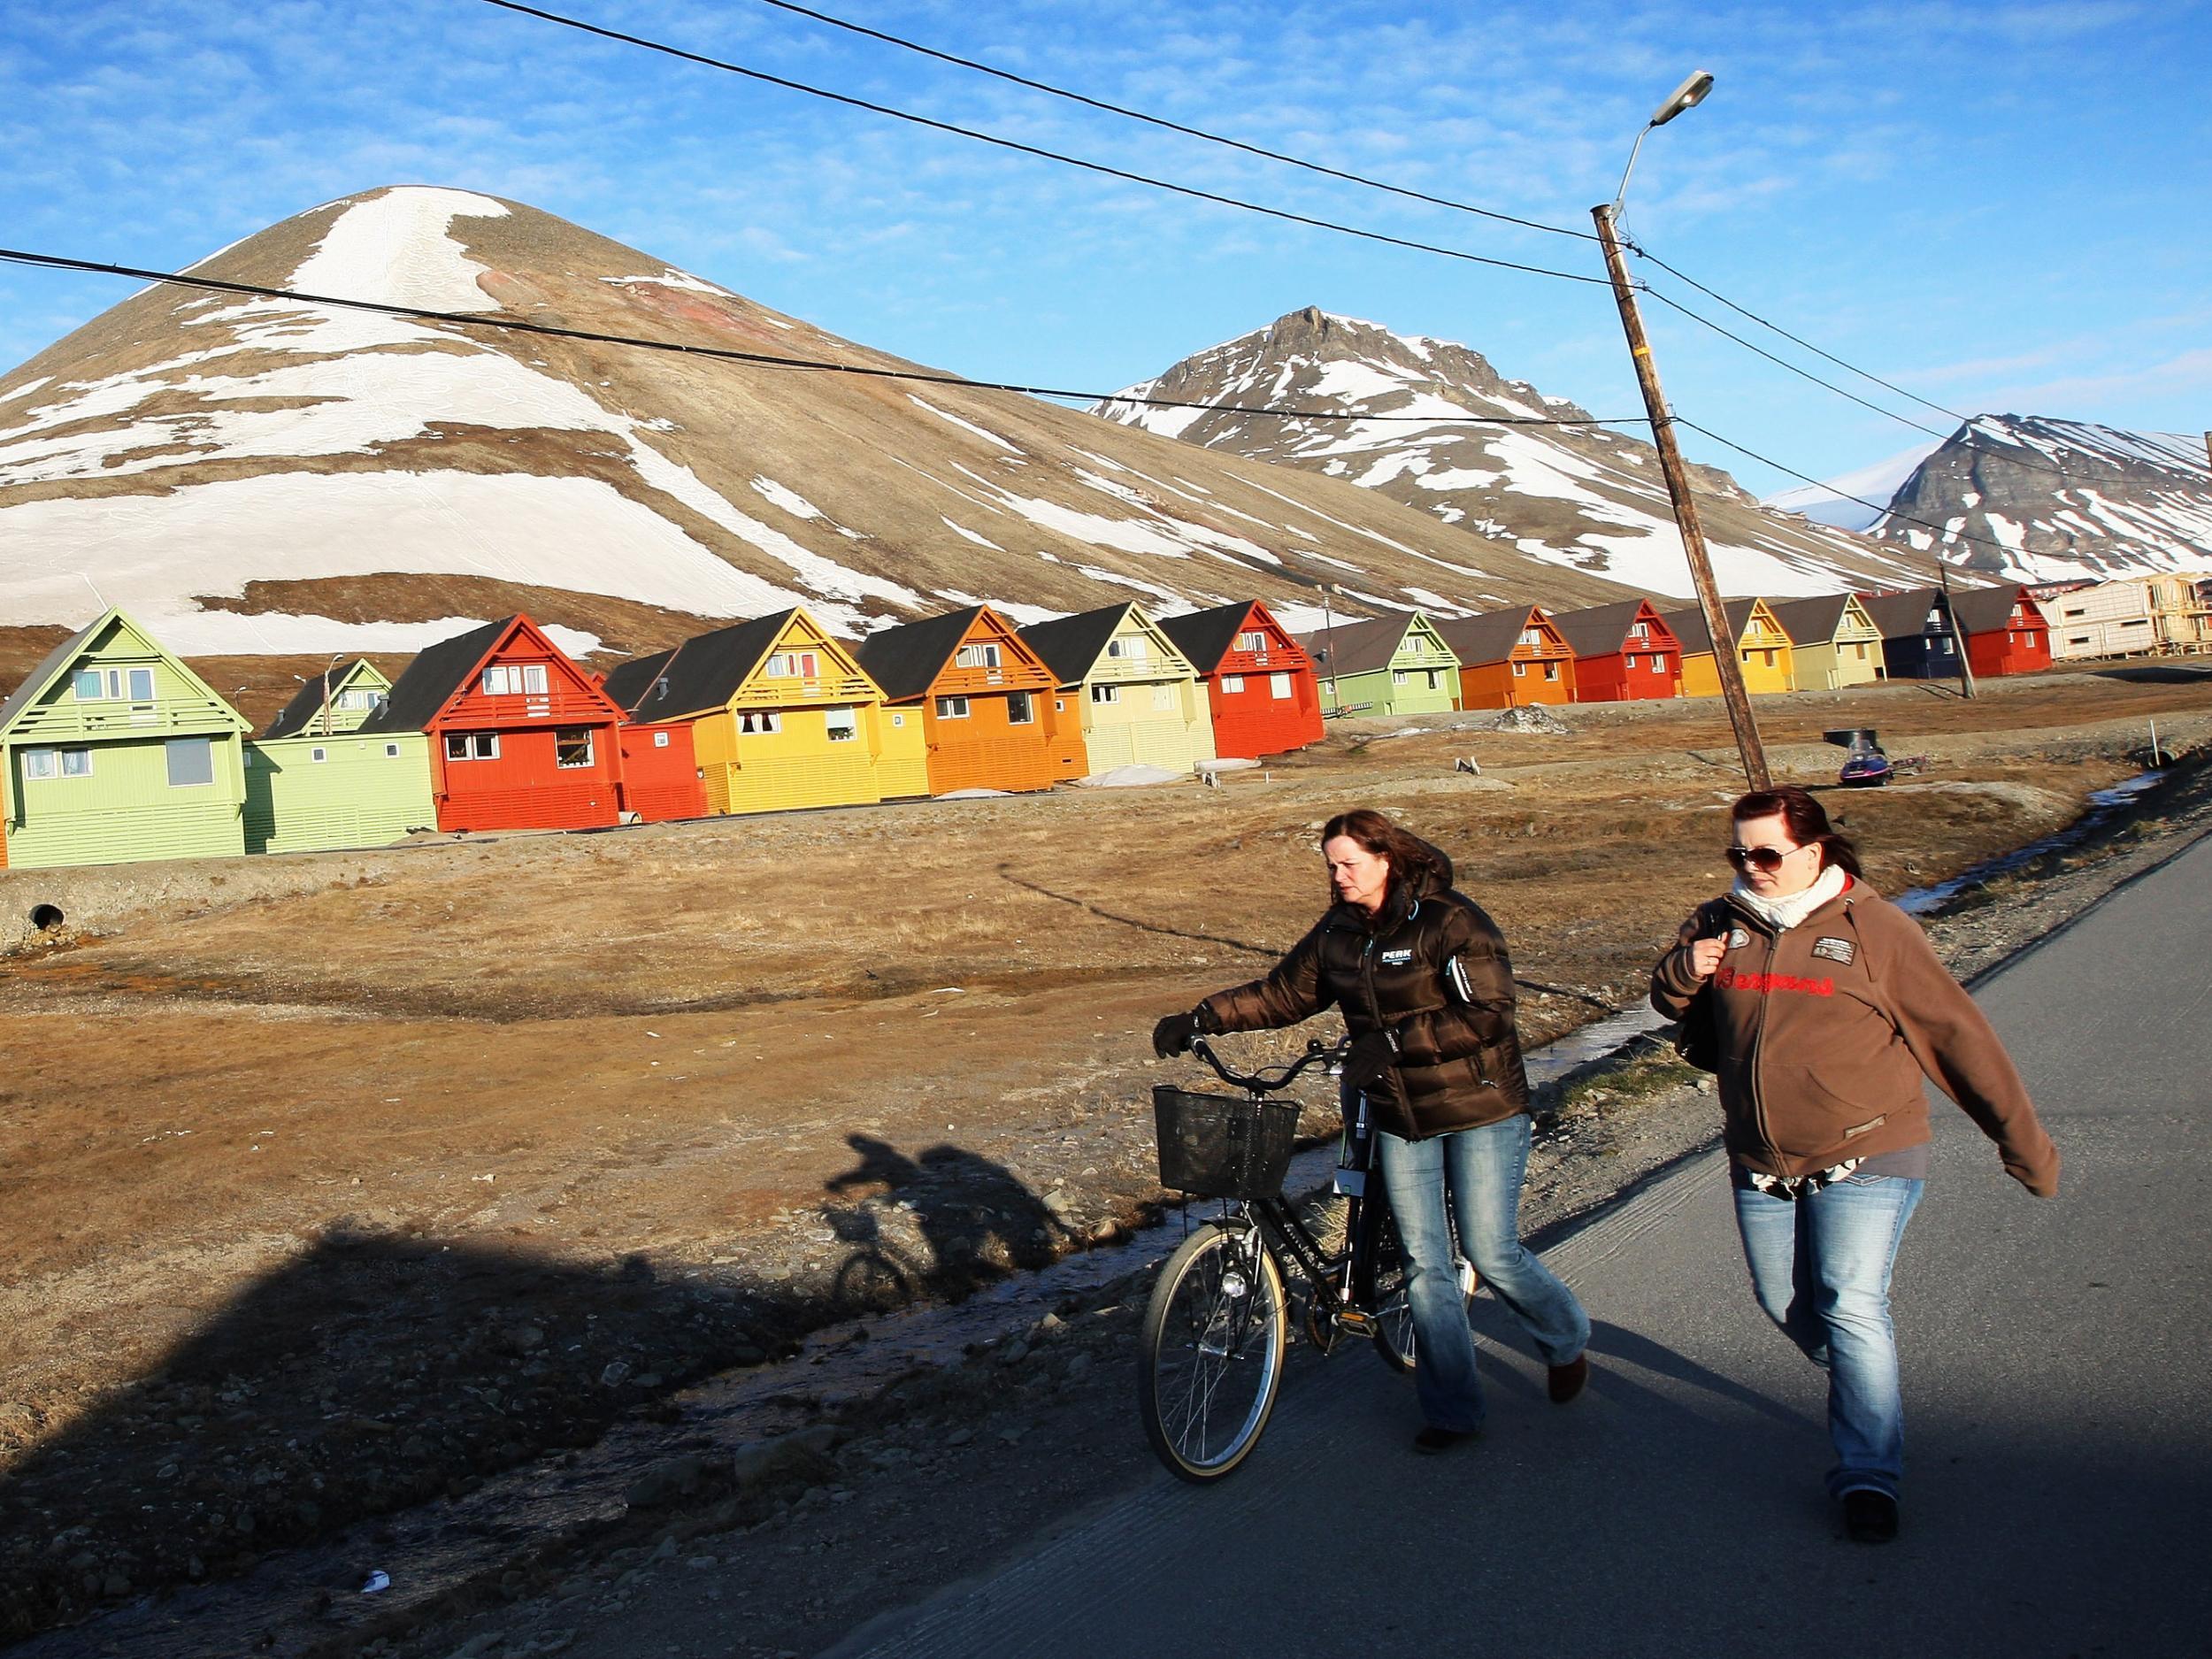 Svalbard in the Arctic Ocean has seen temperatures soar in recent years